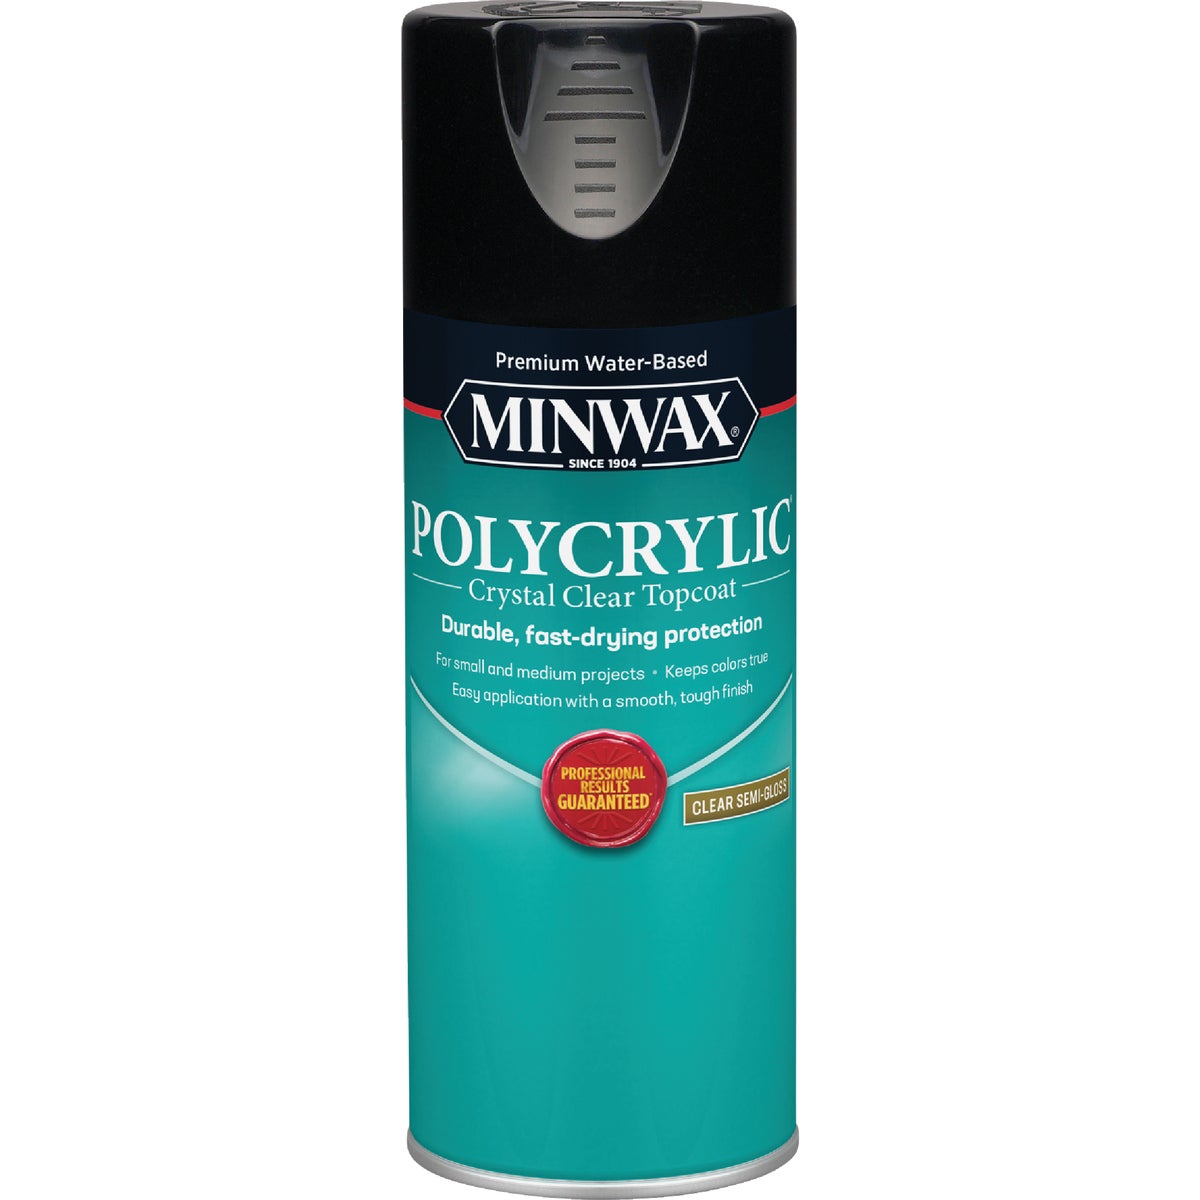 Minwax Semi-Gloss Polycrylic Spray Protective Finish Spray Varnish, 11.5 Oz.